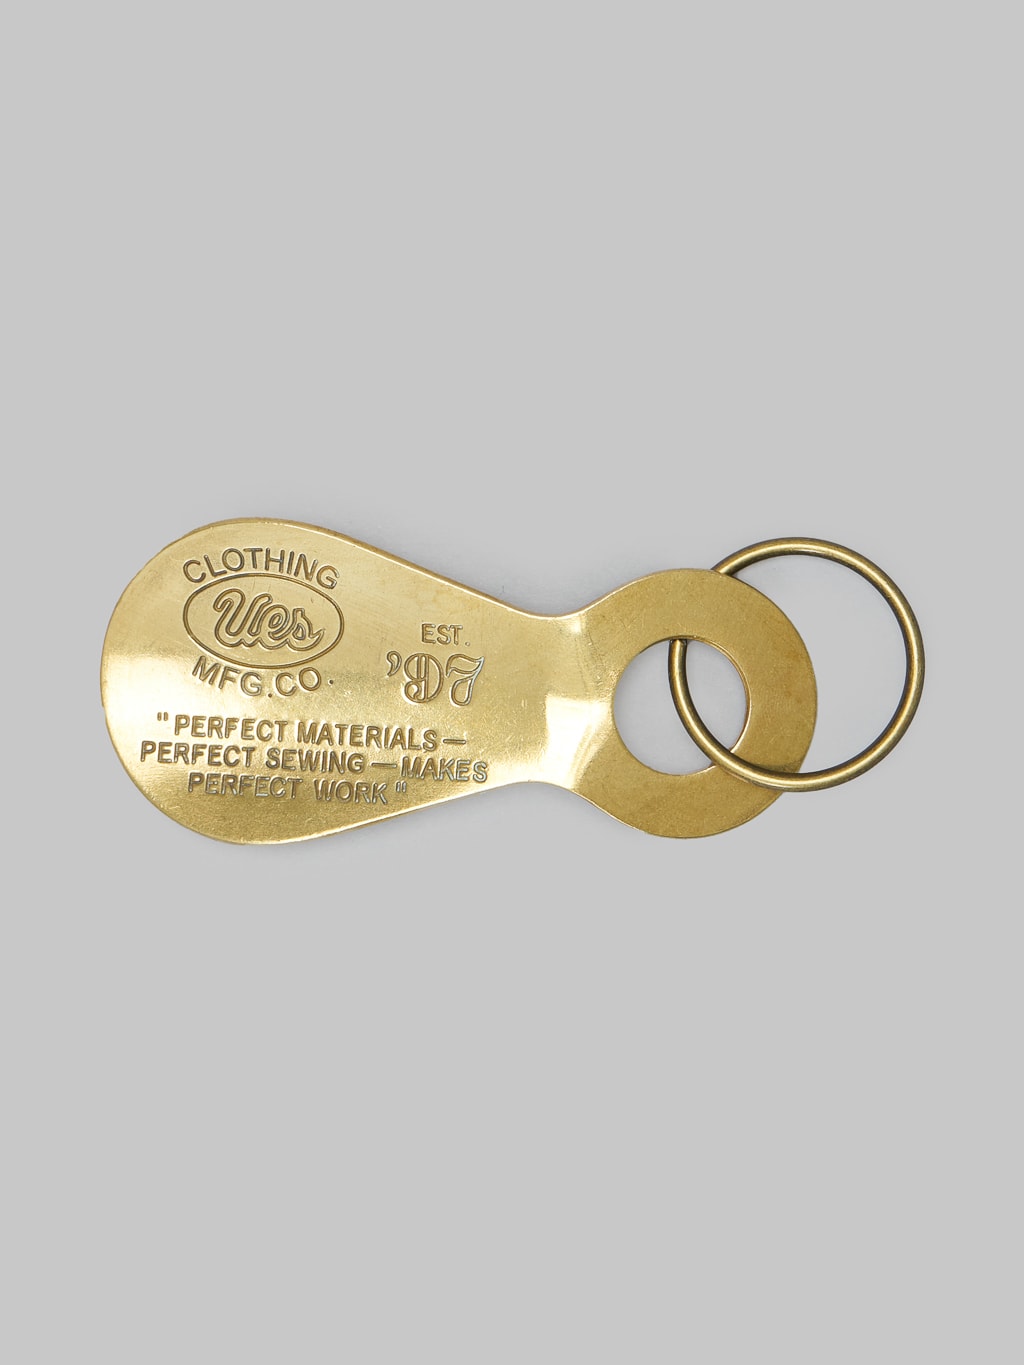 UES Solid Brass Shoehorn Keyholder Vintage Style